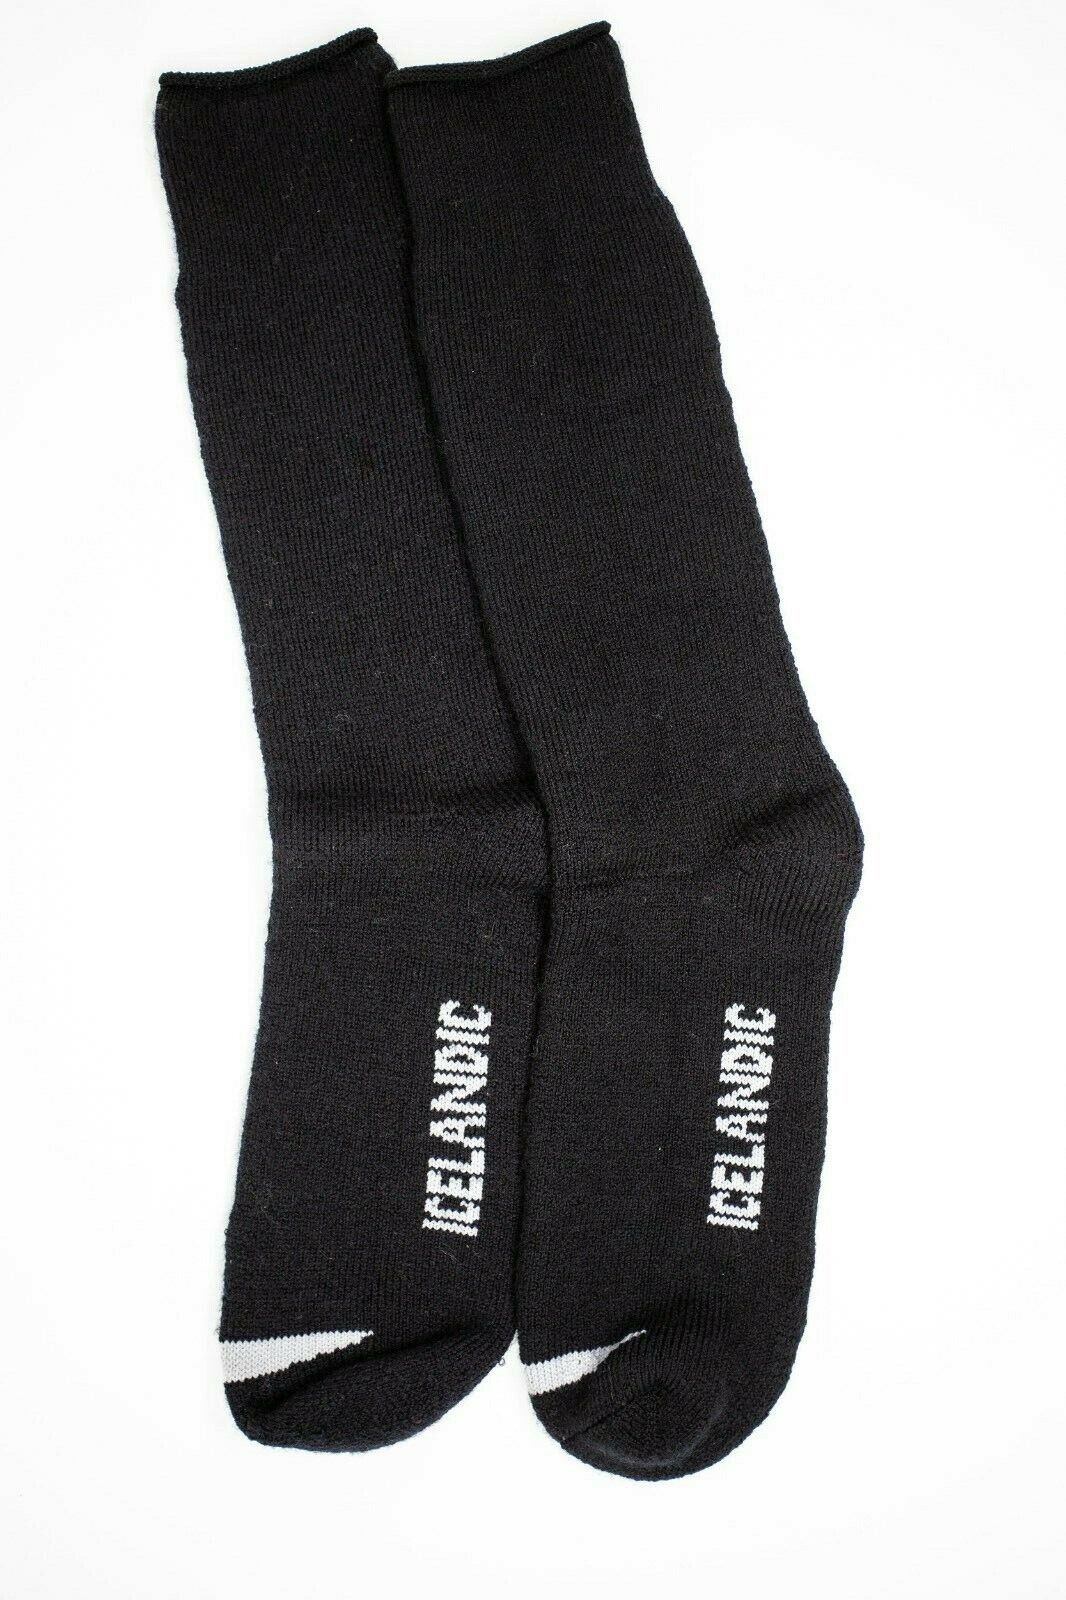 Merino Wool Knee High Thermal Socks, J.B. Field's 30 Below